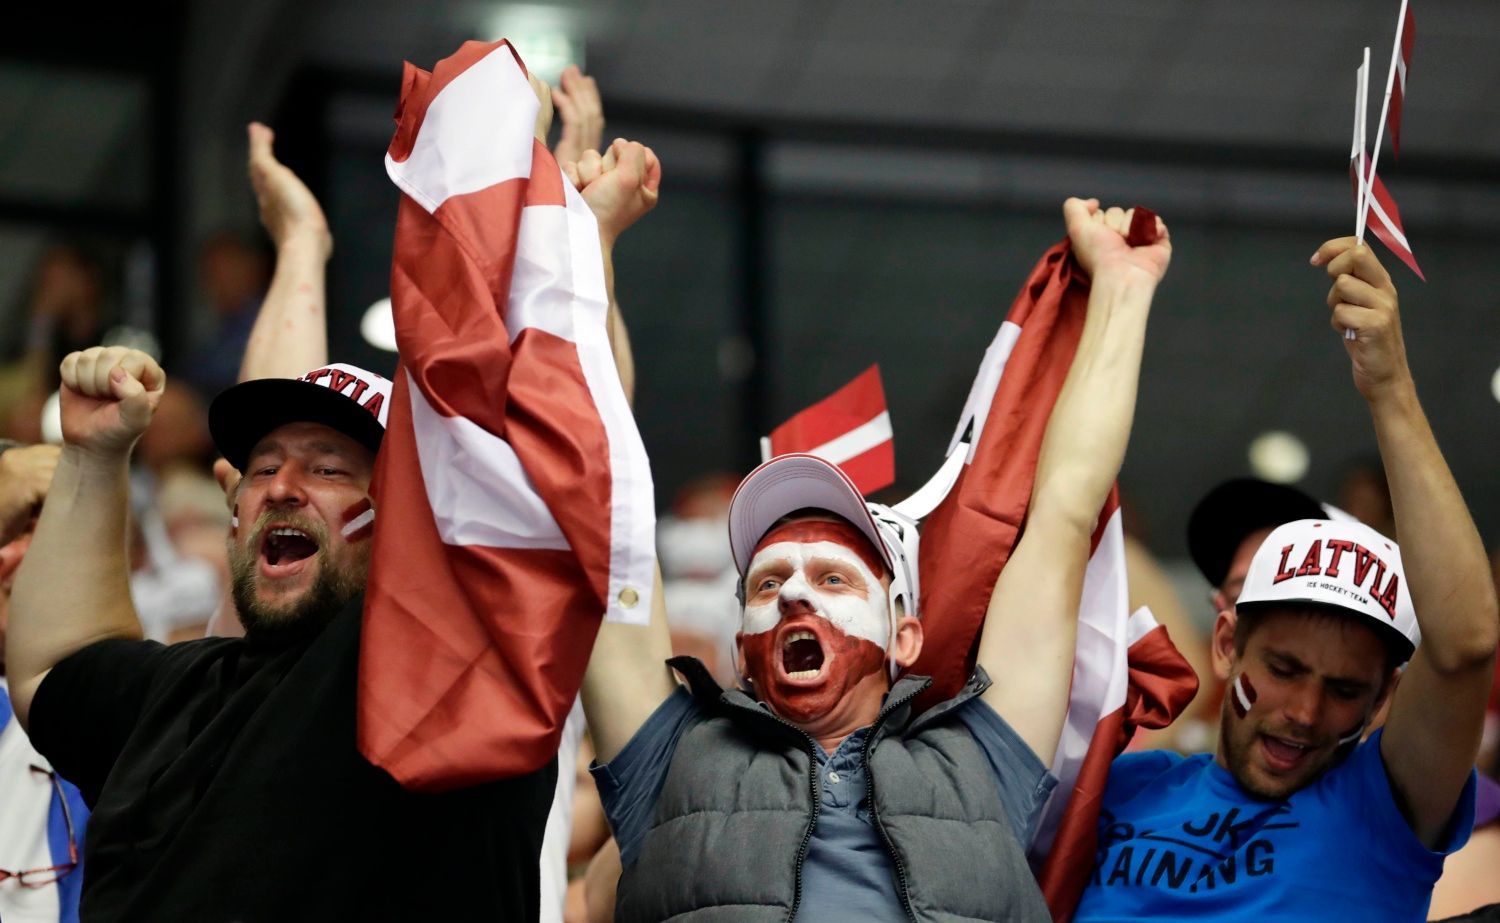 MS 2018, Lotyšsko-Dánsko:Lotyšští fanoušci